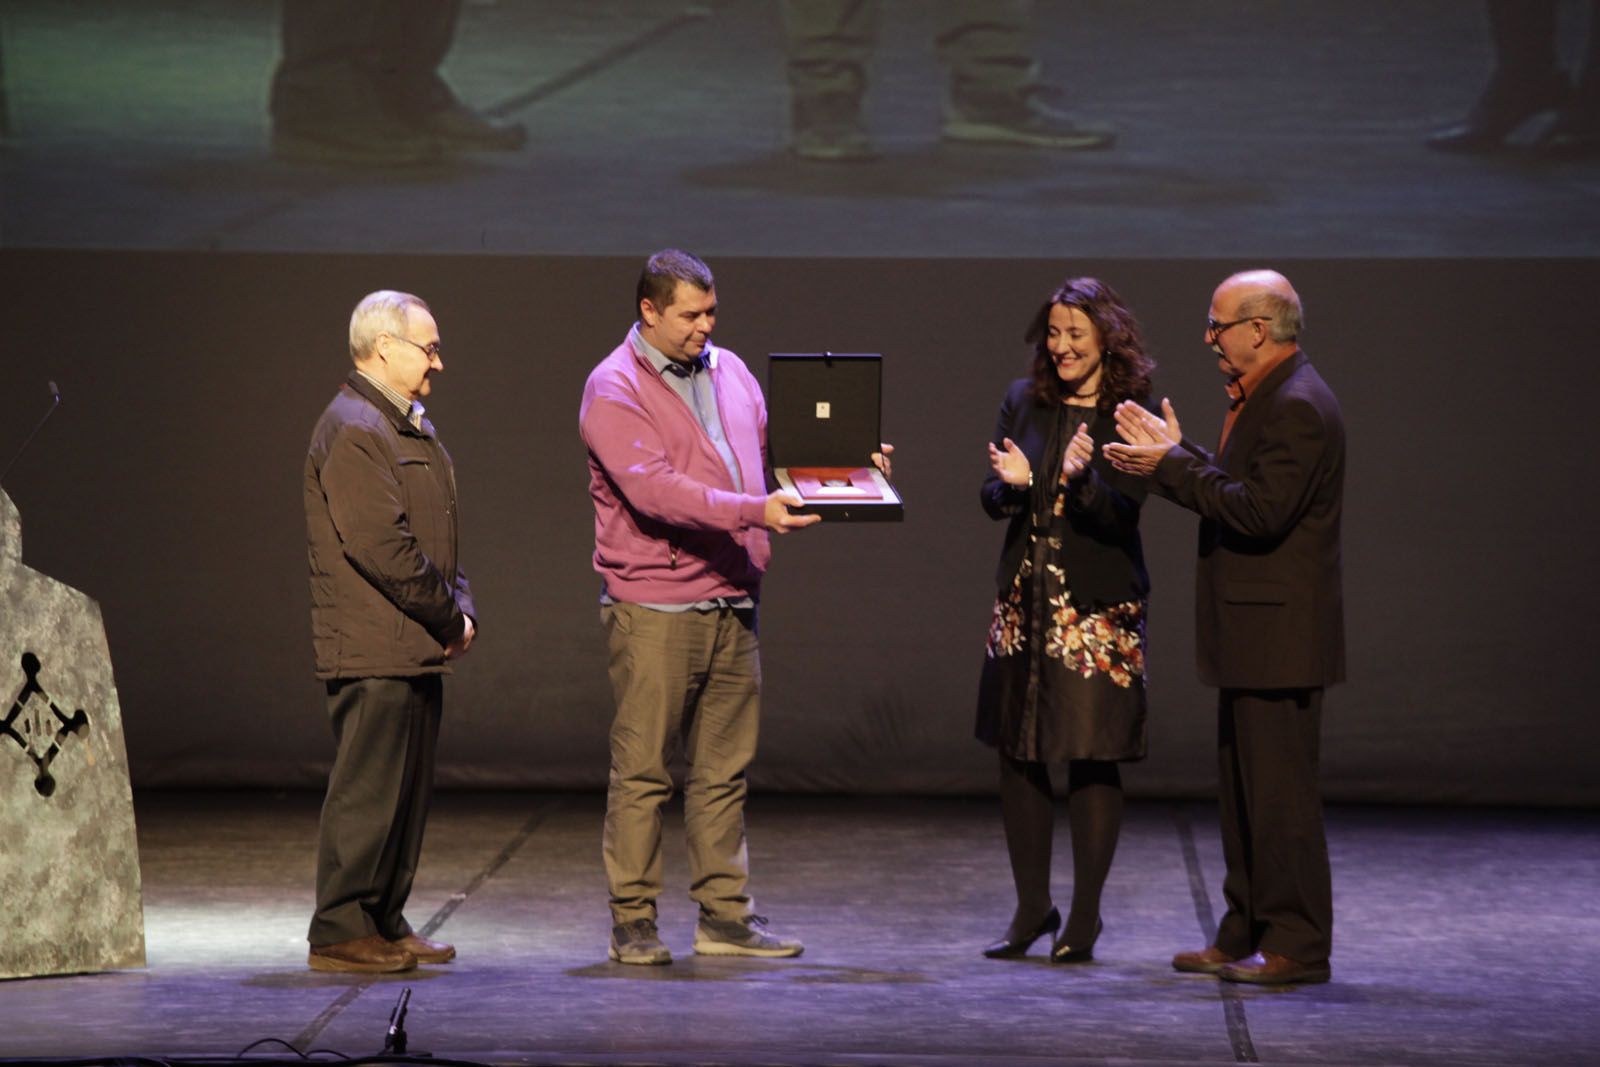 Medalla d'honor per a La Unió Santcugatenca FOTO: Artur Ribera